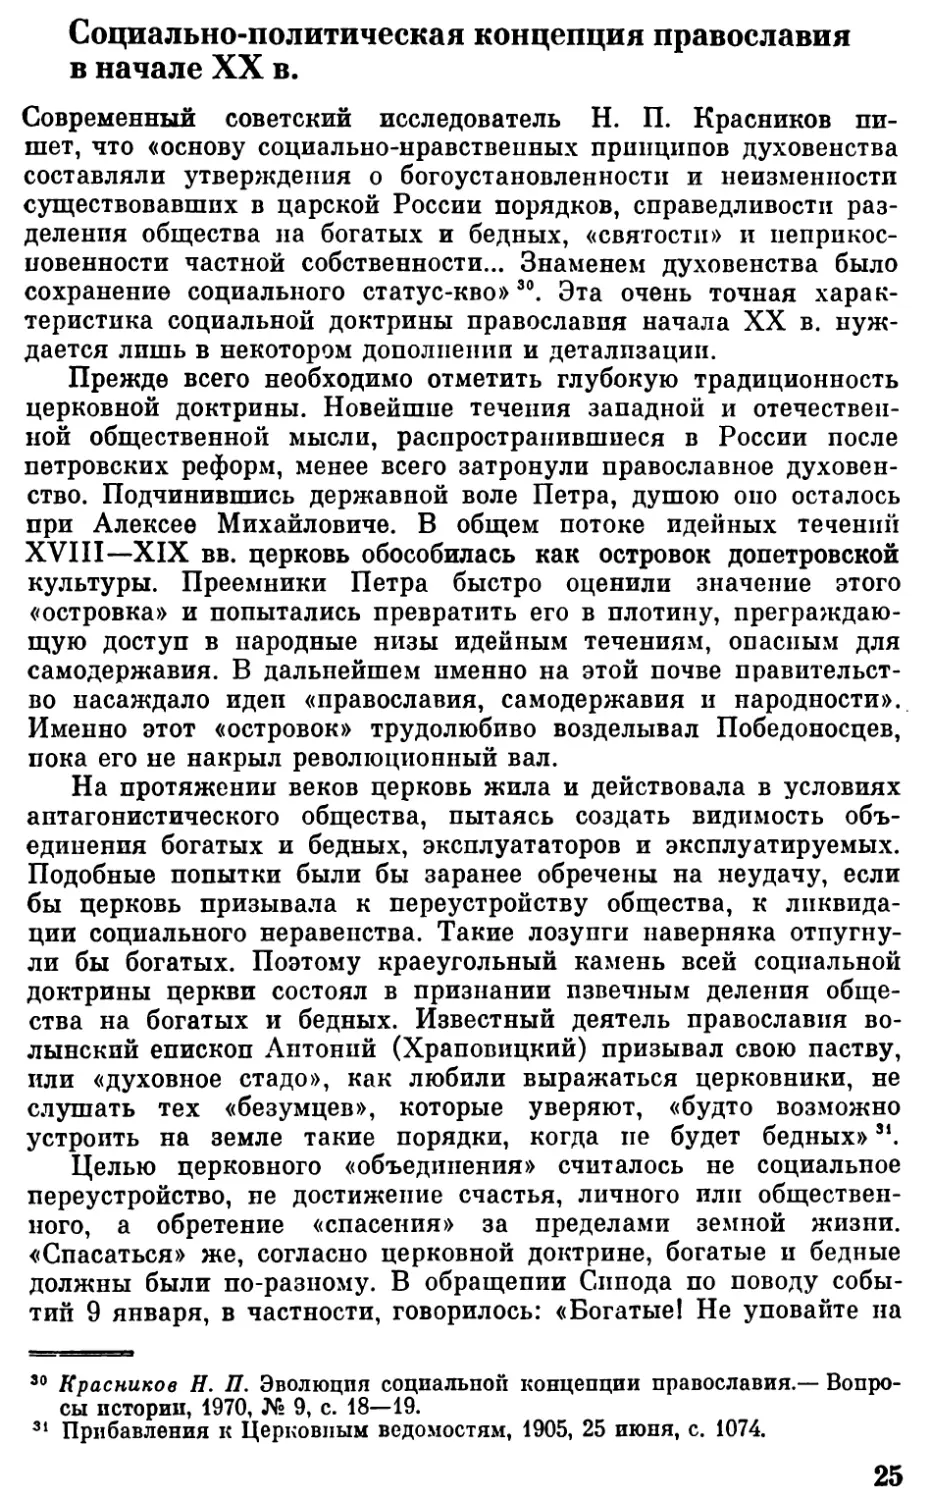 Социально-политическая концепция православия в начале XX в